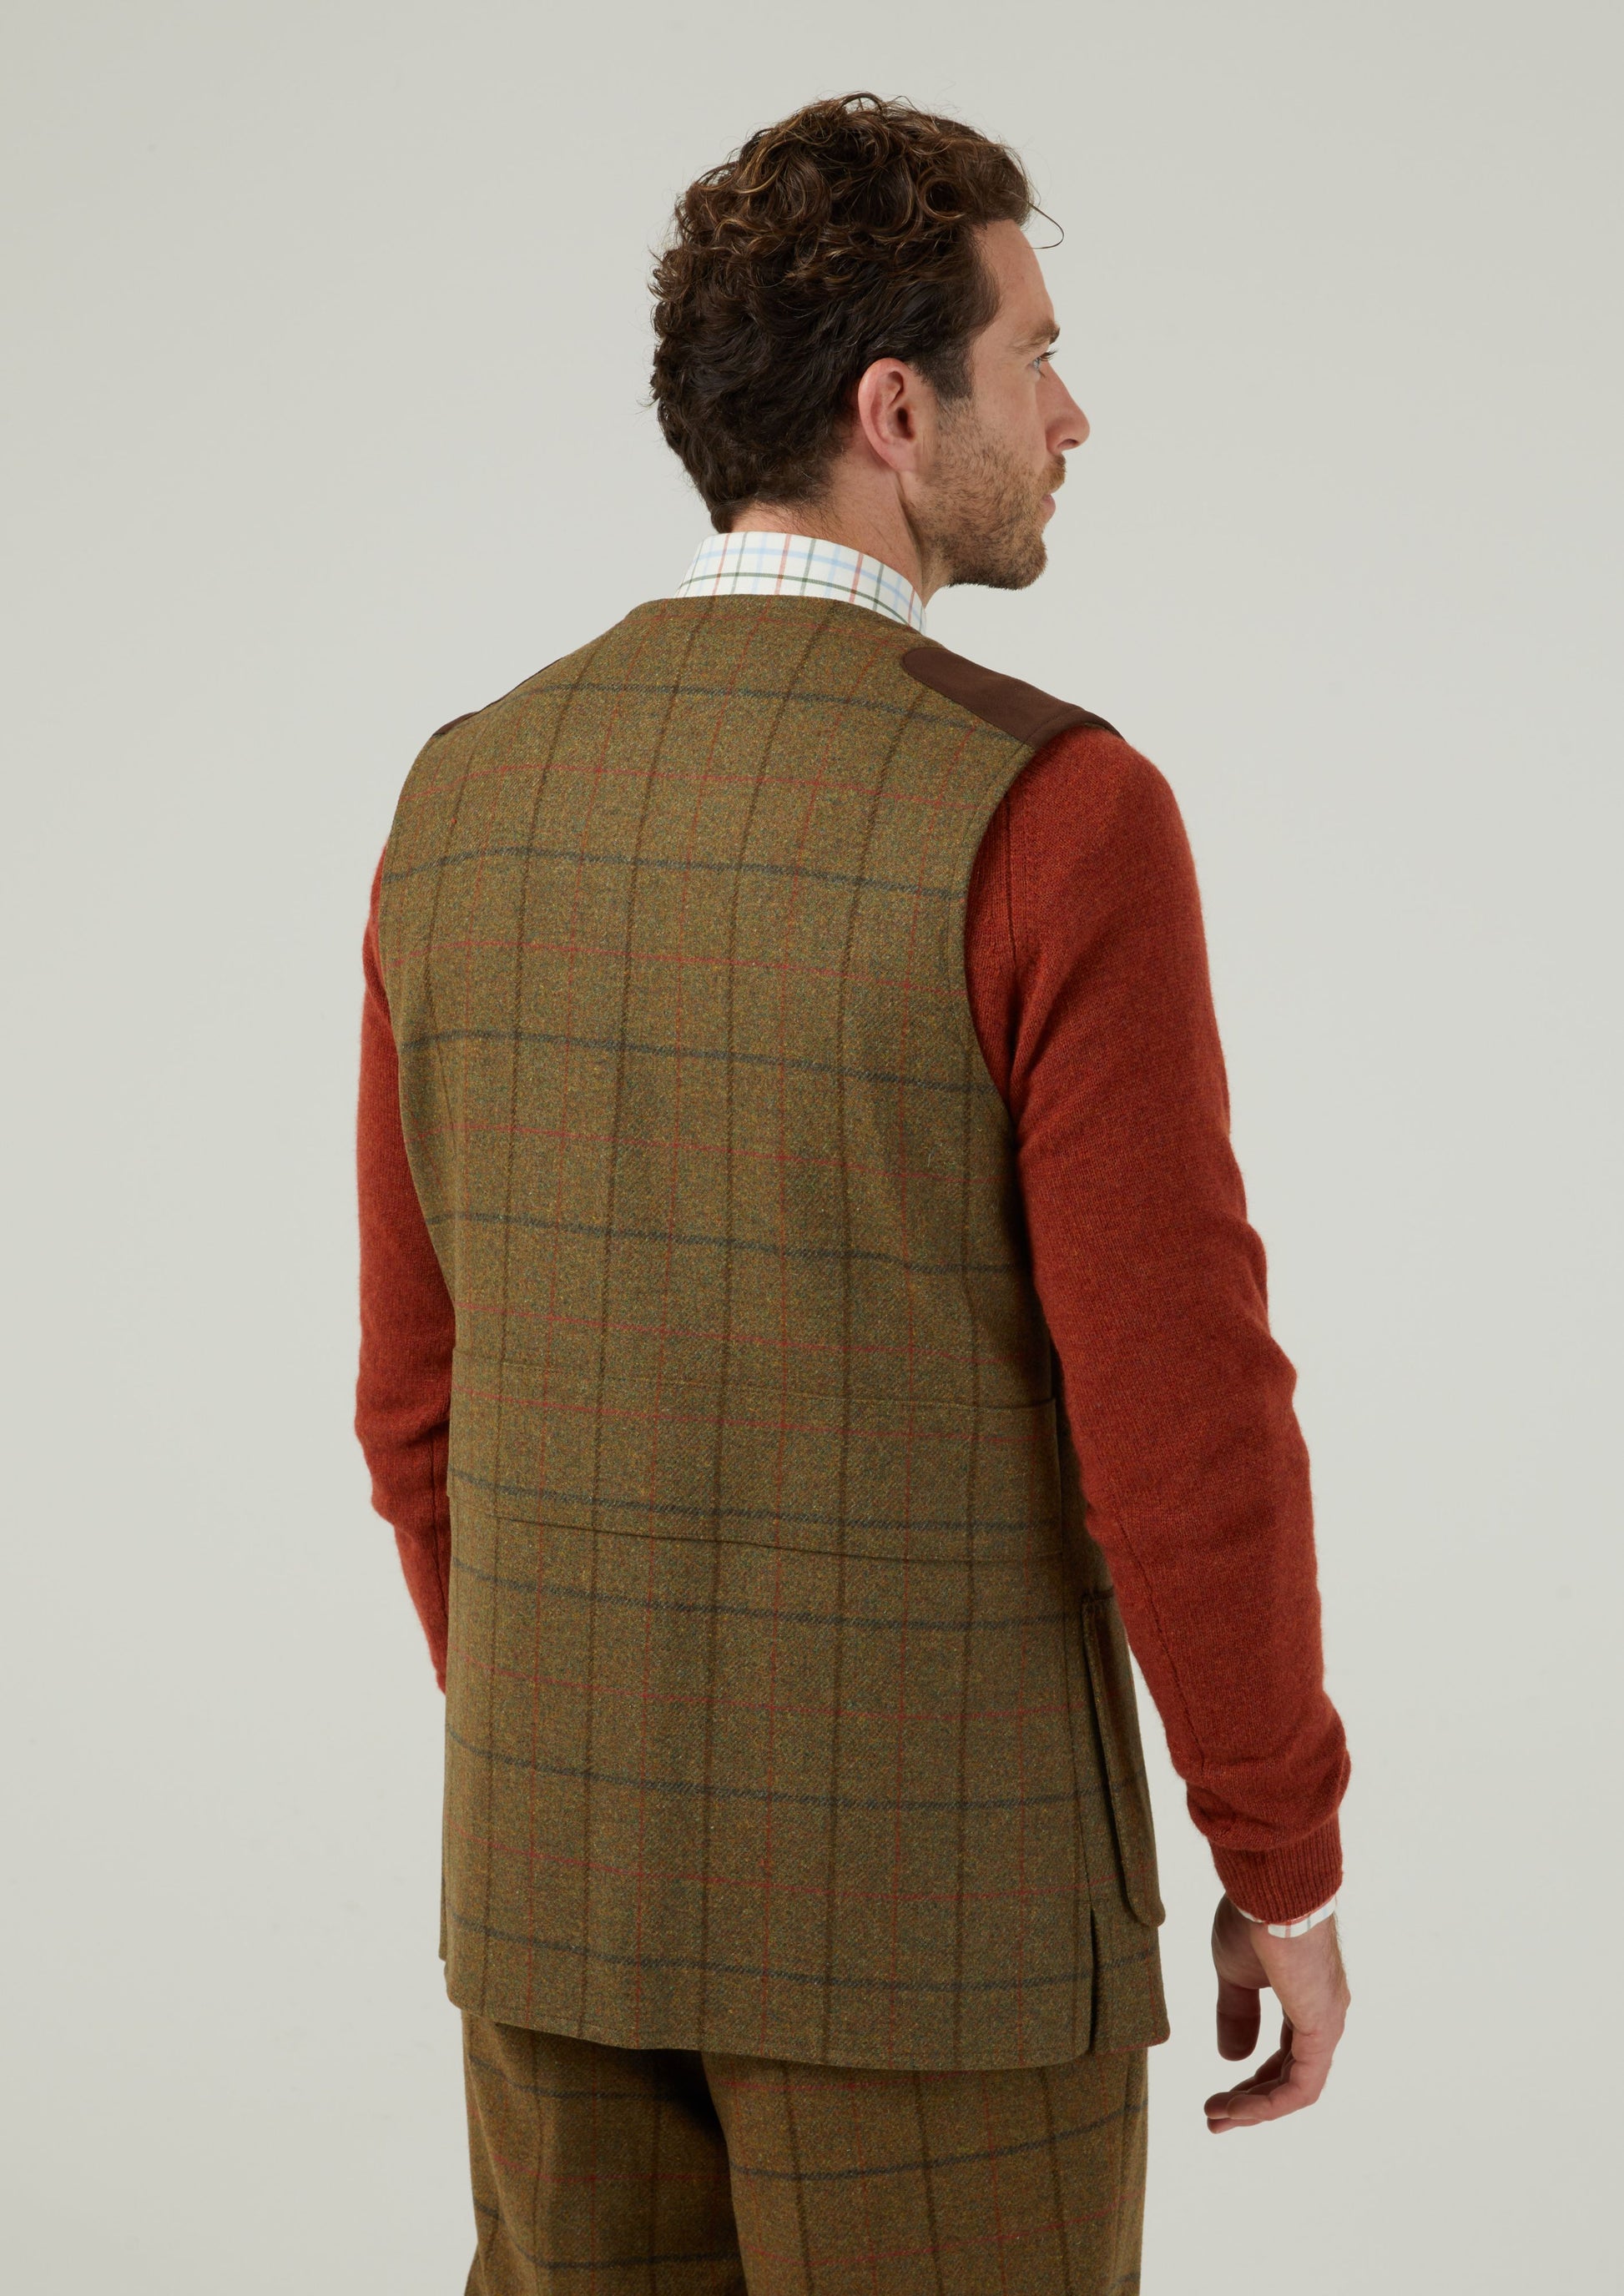 Combrook Men's Tweed Shooting Waistcoat in Thyme 